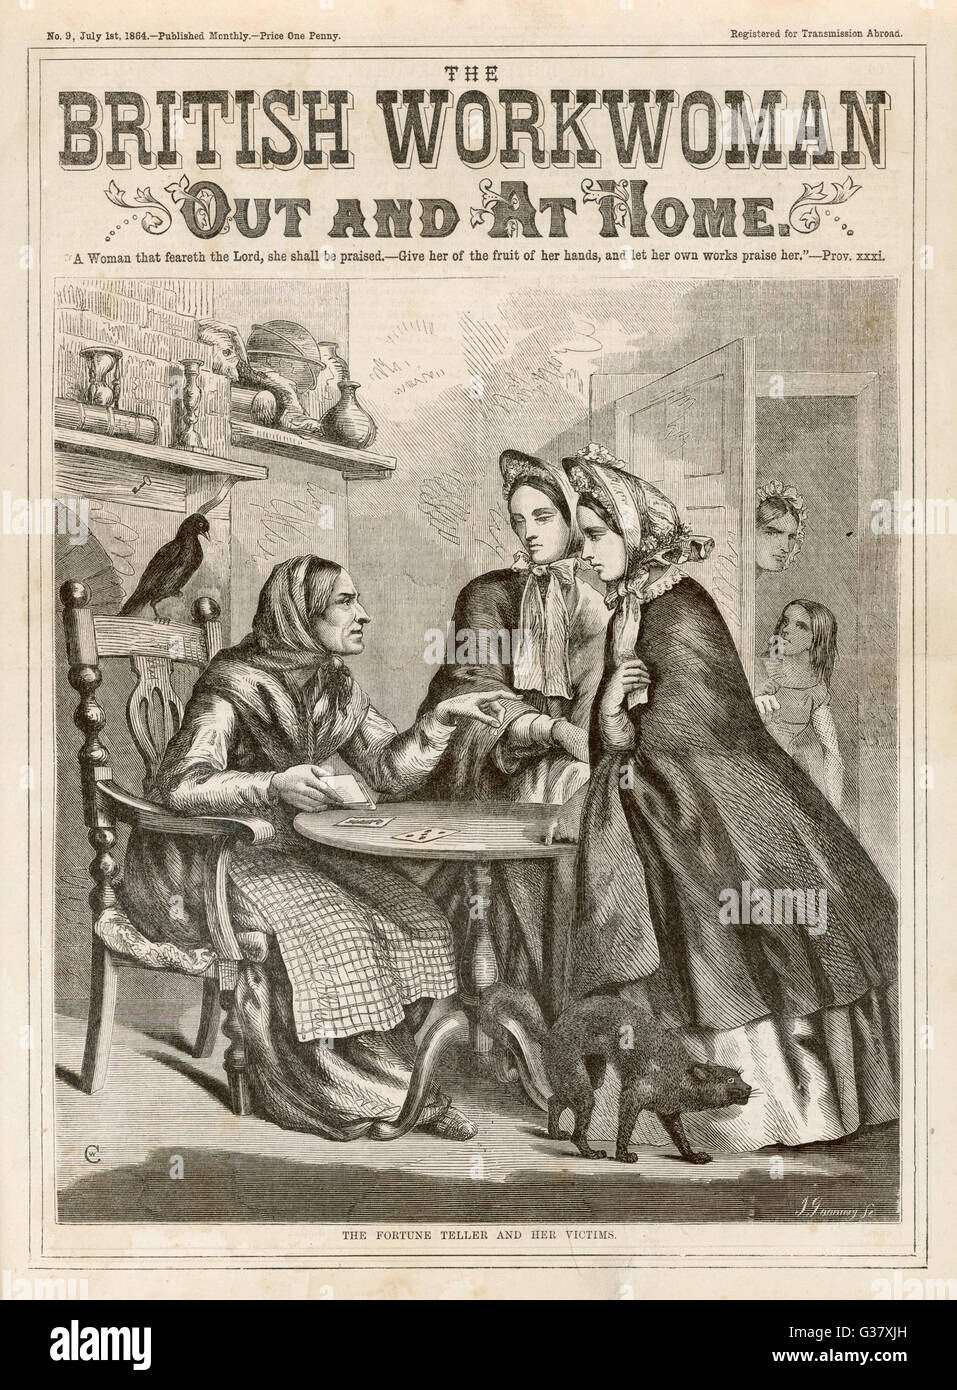 Zwei alarmiert aussehende Frauen besuchen eine Wahrsagerin in ihrem Häuschen. Die Anwesenheit einer Katze und Rabe legt nahe, dass die Wahrsagerin Hexe-ähnliche Eigenschaften hat.     Datum: 1864 Stockfoto